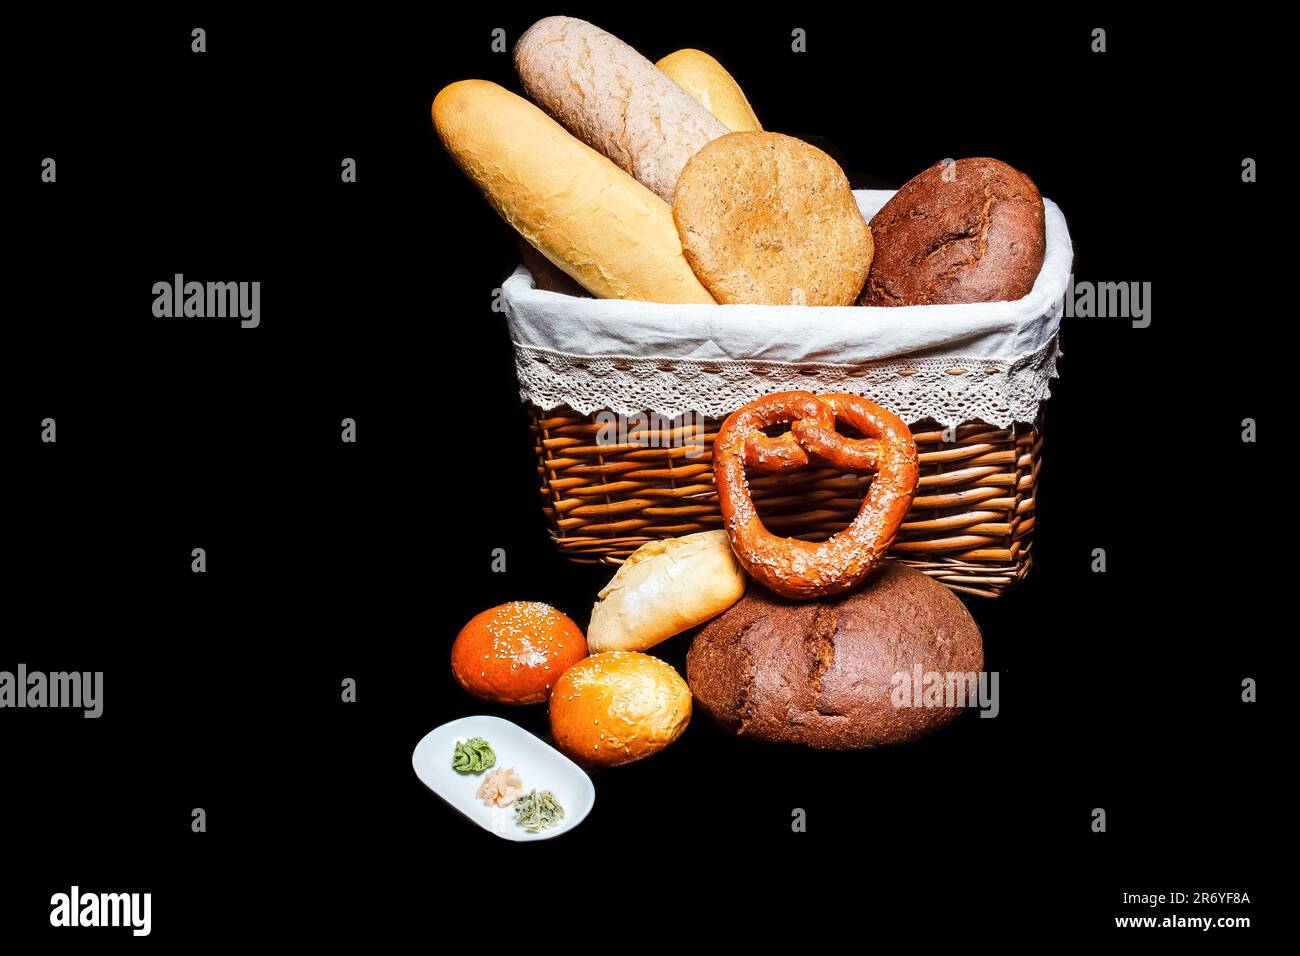 Un cesto di pane appena sfornato si distingue su uno sfondo nero, simboleggiando l'importanza di un'alimentazione sana e del benessere. Foto Stock